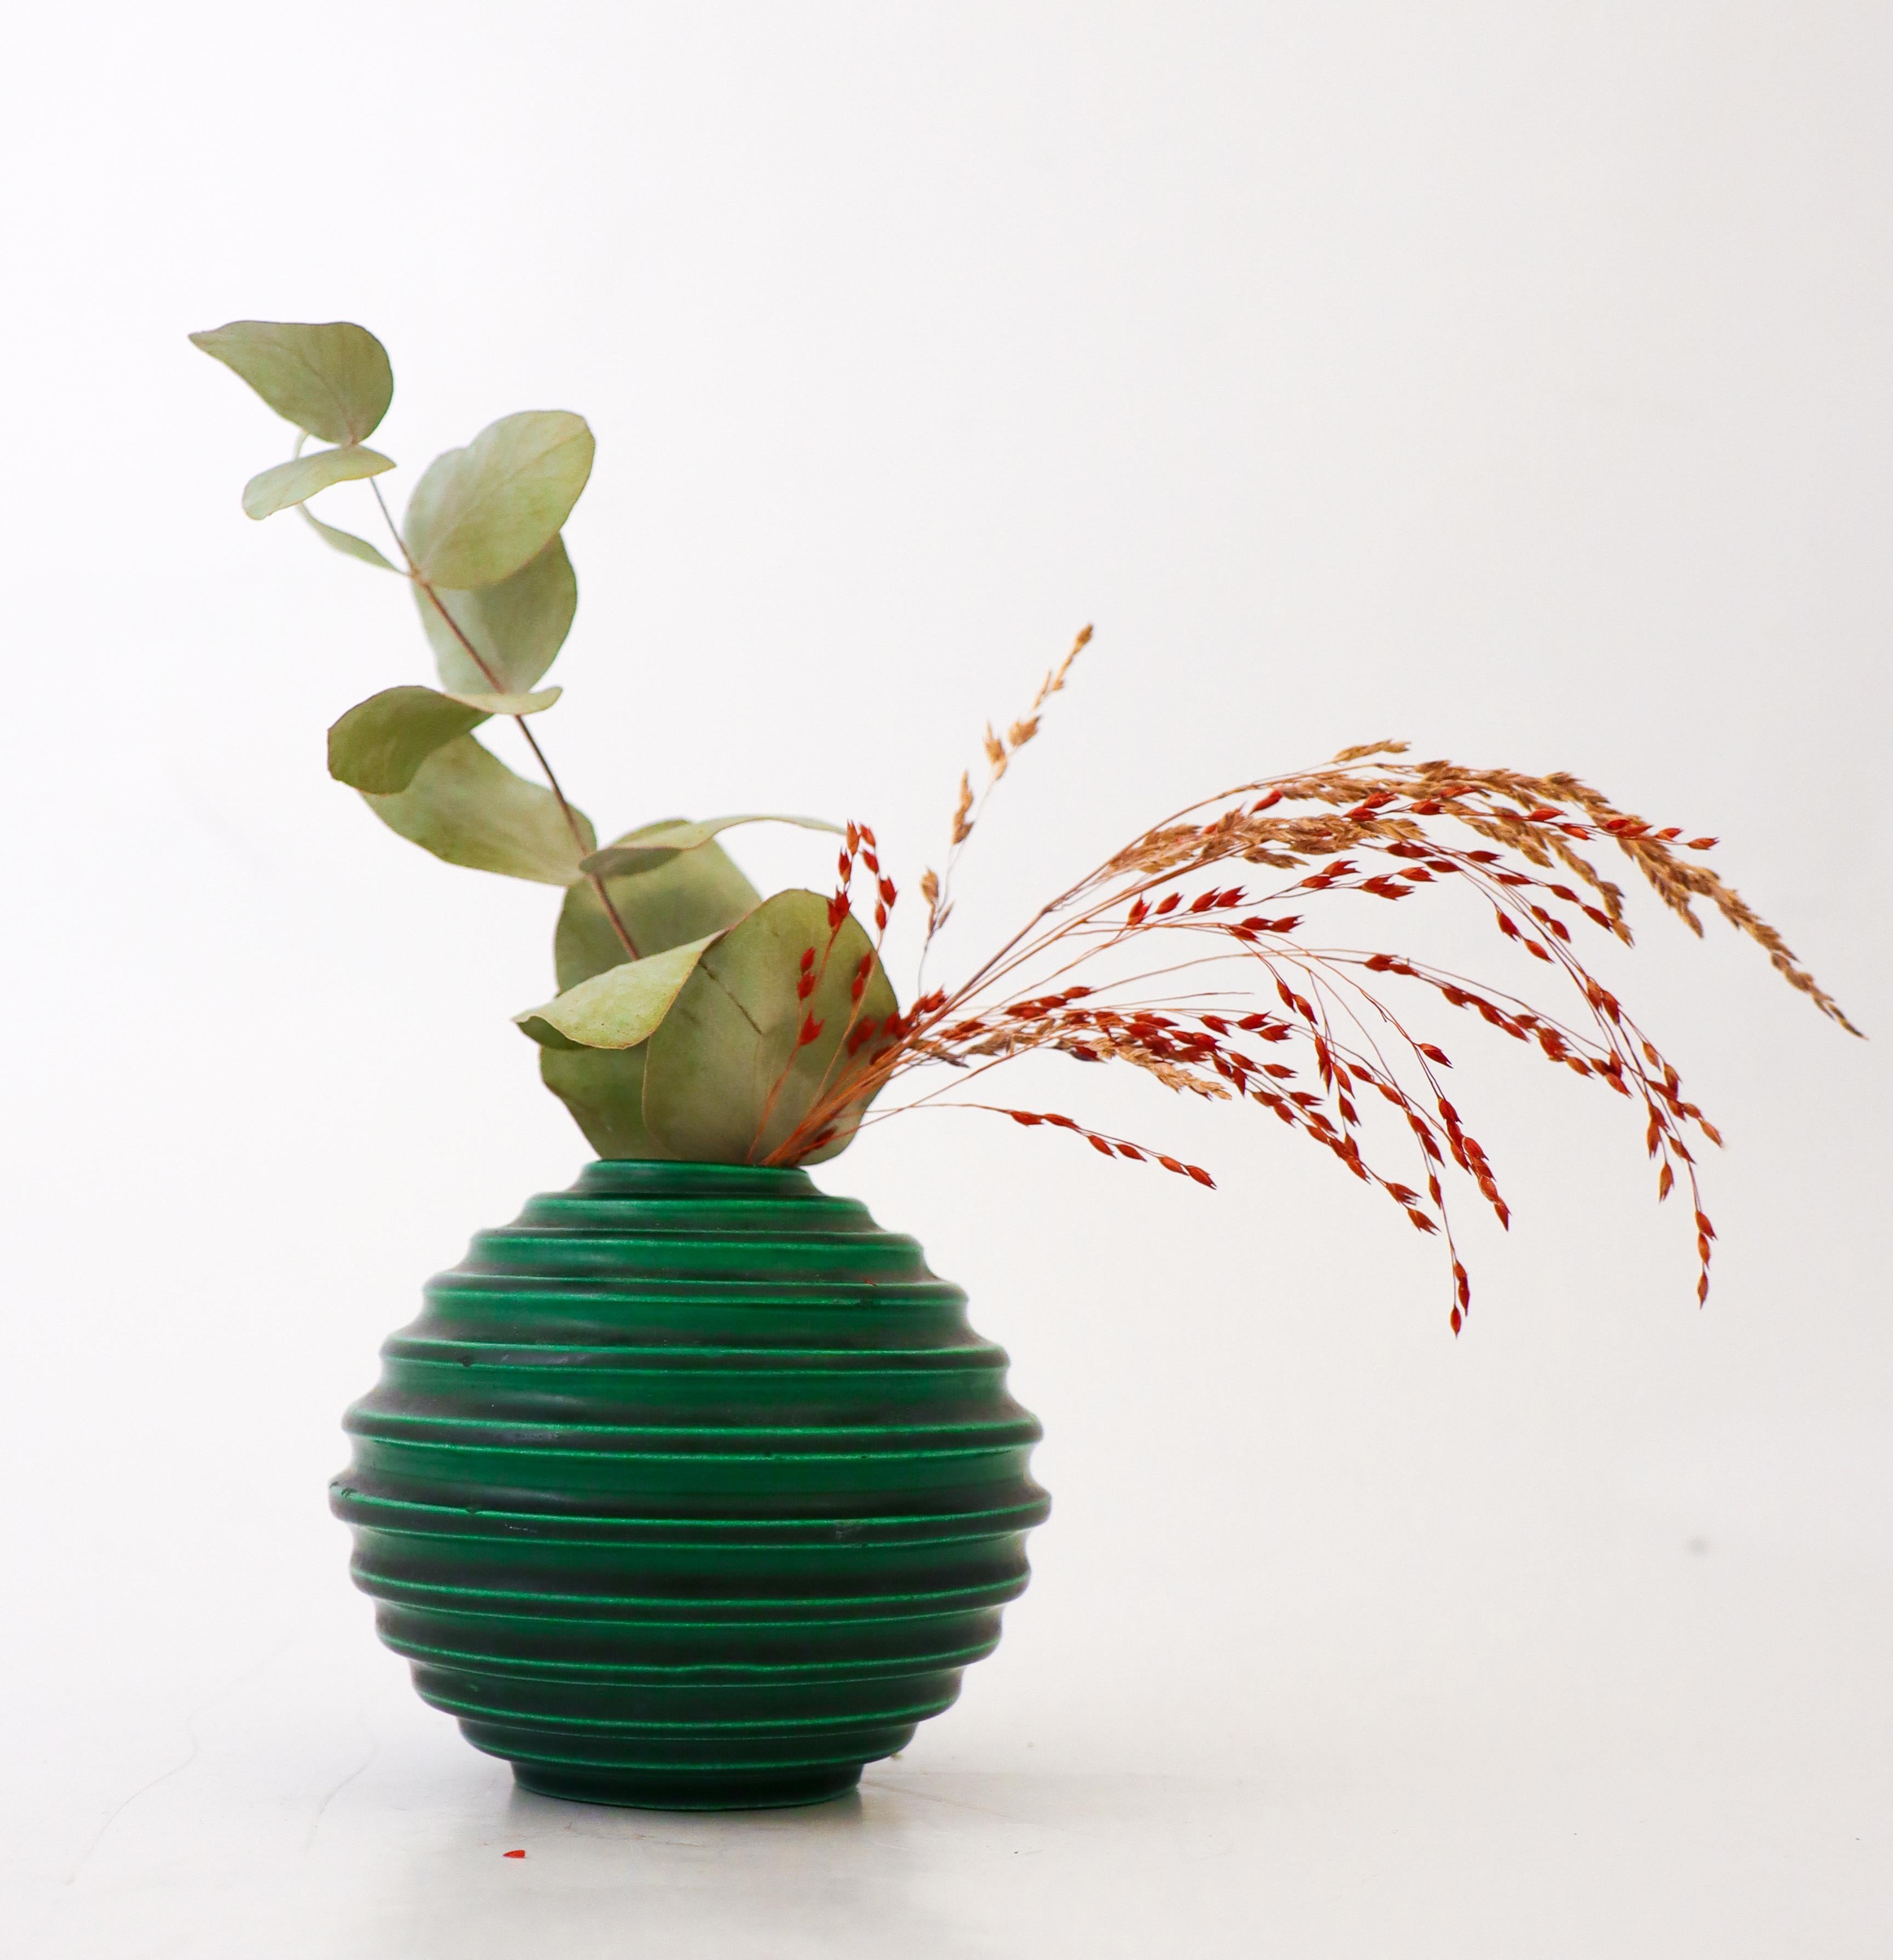 Un vase globuleux conçu par Ewald Dahlskog chez Bo Fajans à Gefle dans les années 1930. Ce vase a été présenté pour la première fois à l'exposition de Stockholm en 1930, qui a marqué le début du fonctionnalisme. Le vase est recouvert d'une belle